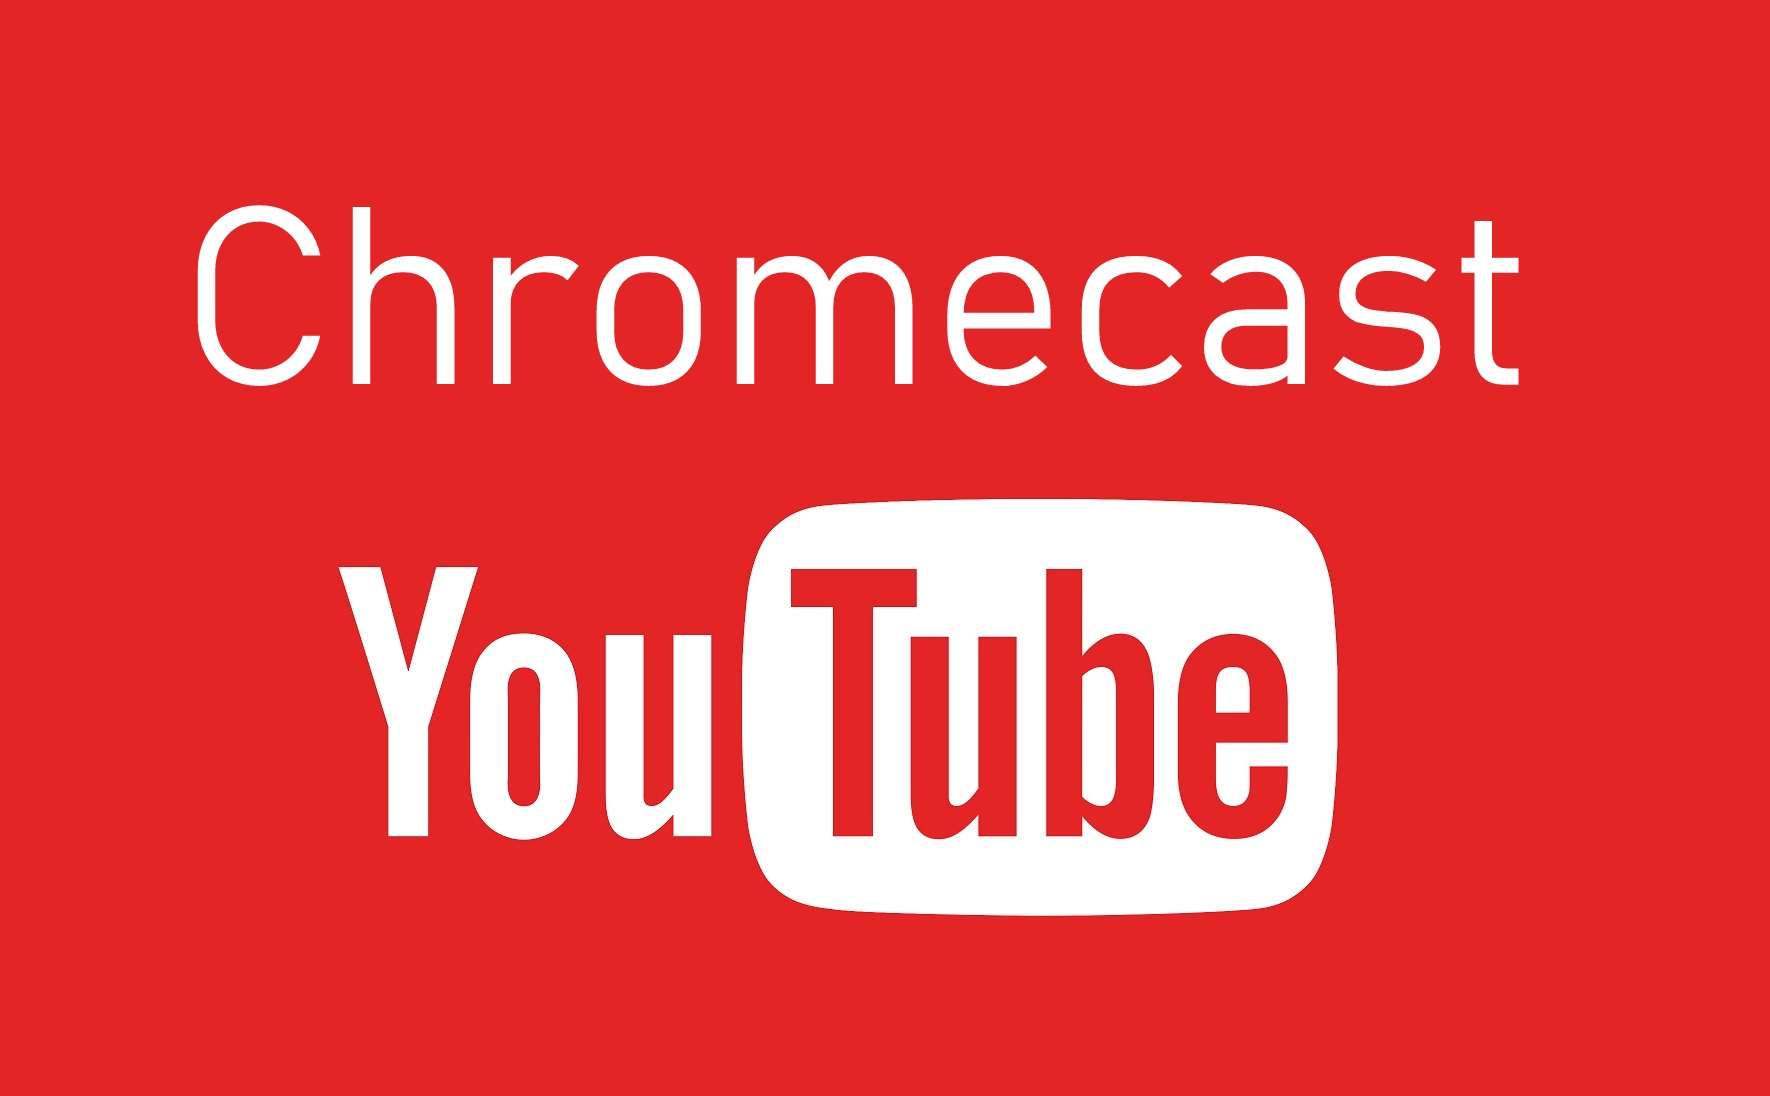 Nola Chromecast YouTube Bideoak [2 Methods]
